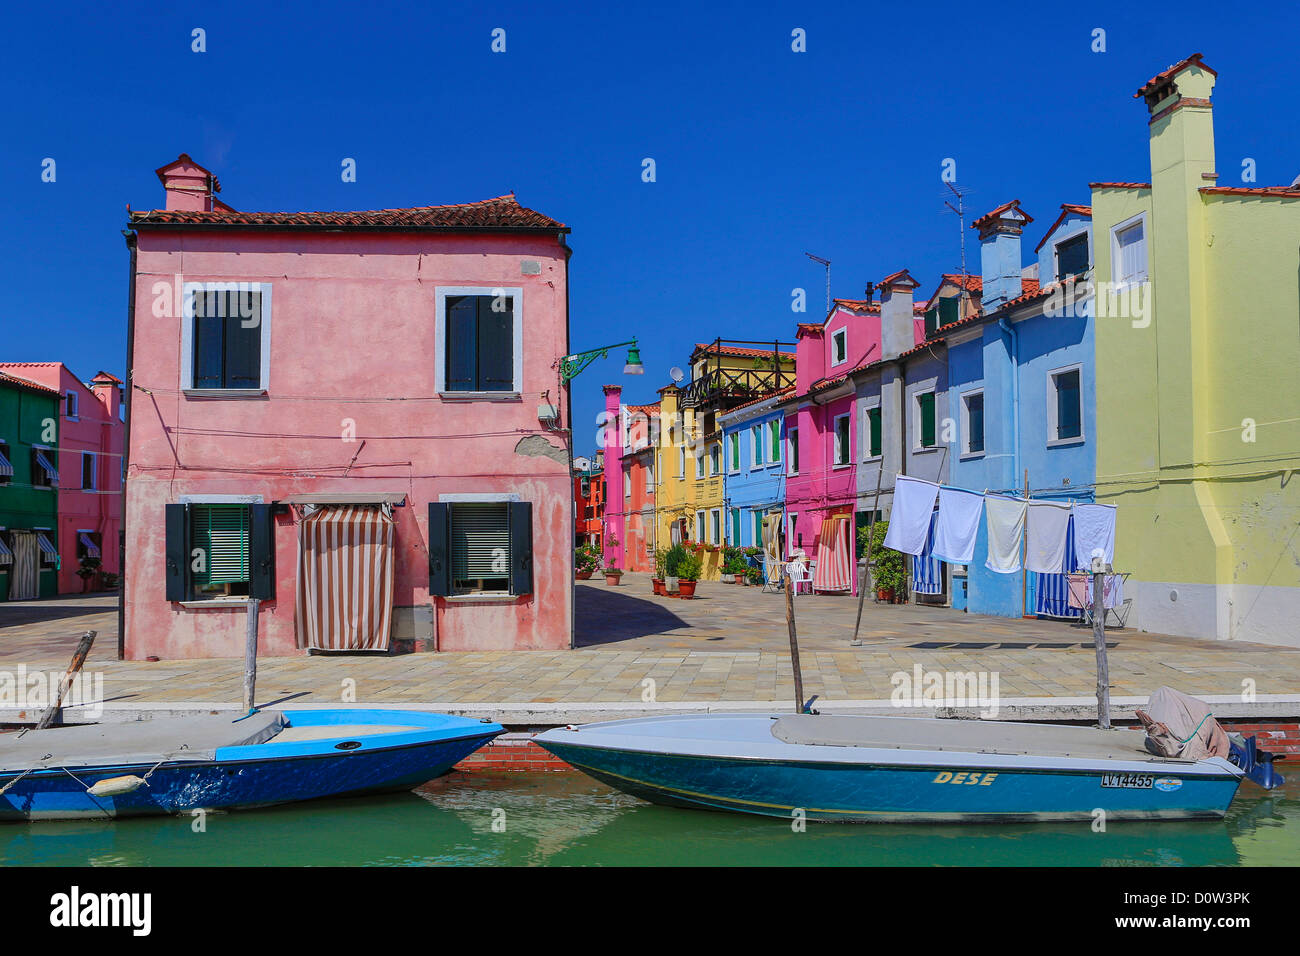 L'Italie, l'Europe, voyage, Burano, architecture, bateau, canal, colorées, couleurs, tourisme, Venise Banque D'Images